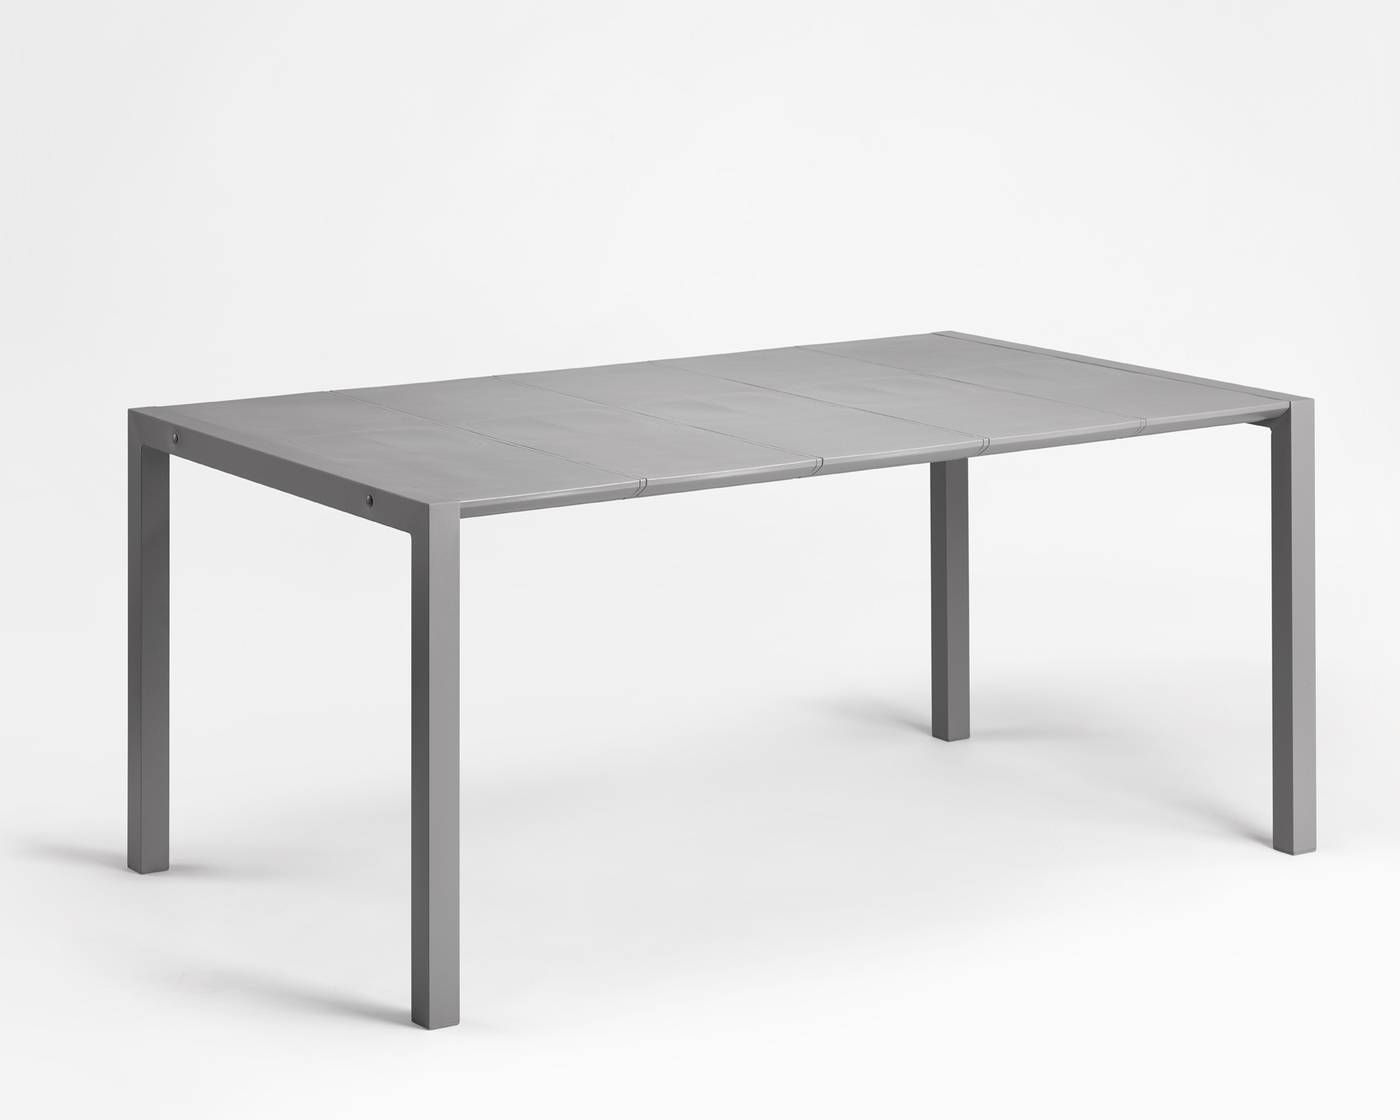 Mesa rectangular con tablero de polipropileno y pies de aluminio. Disponible en color gris o color blanco.